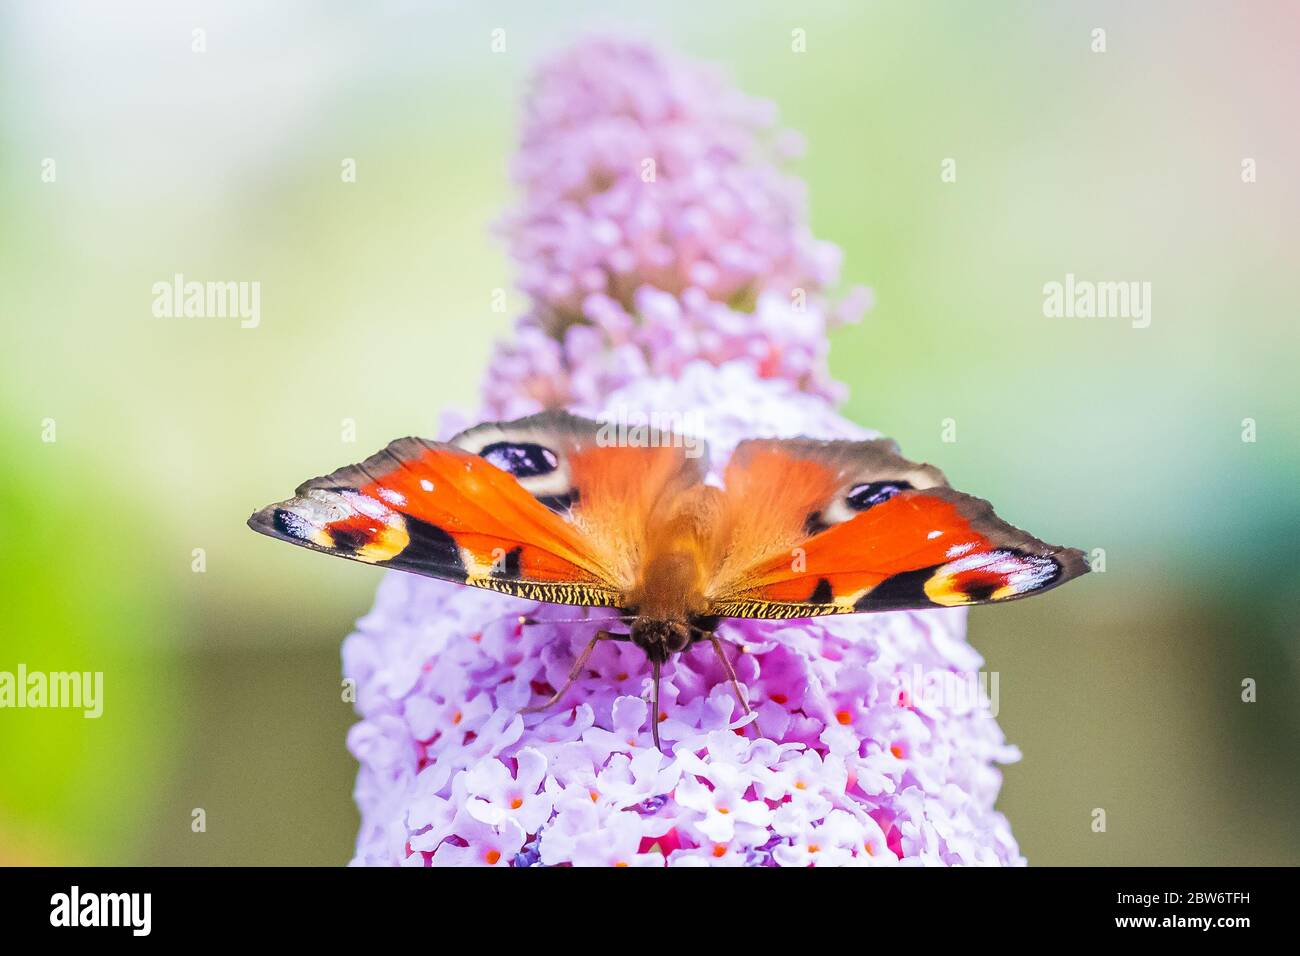 Aglais io, farfalla pavone, alimentando il nettare da un viola butterfly-bush nel giardino. La luce diretta del sole, colori vibranti. Foto Stock